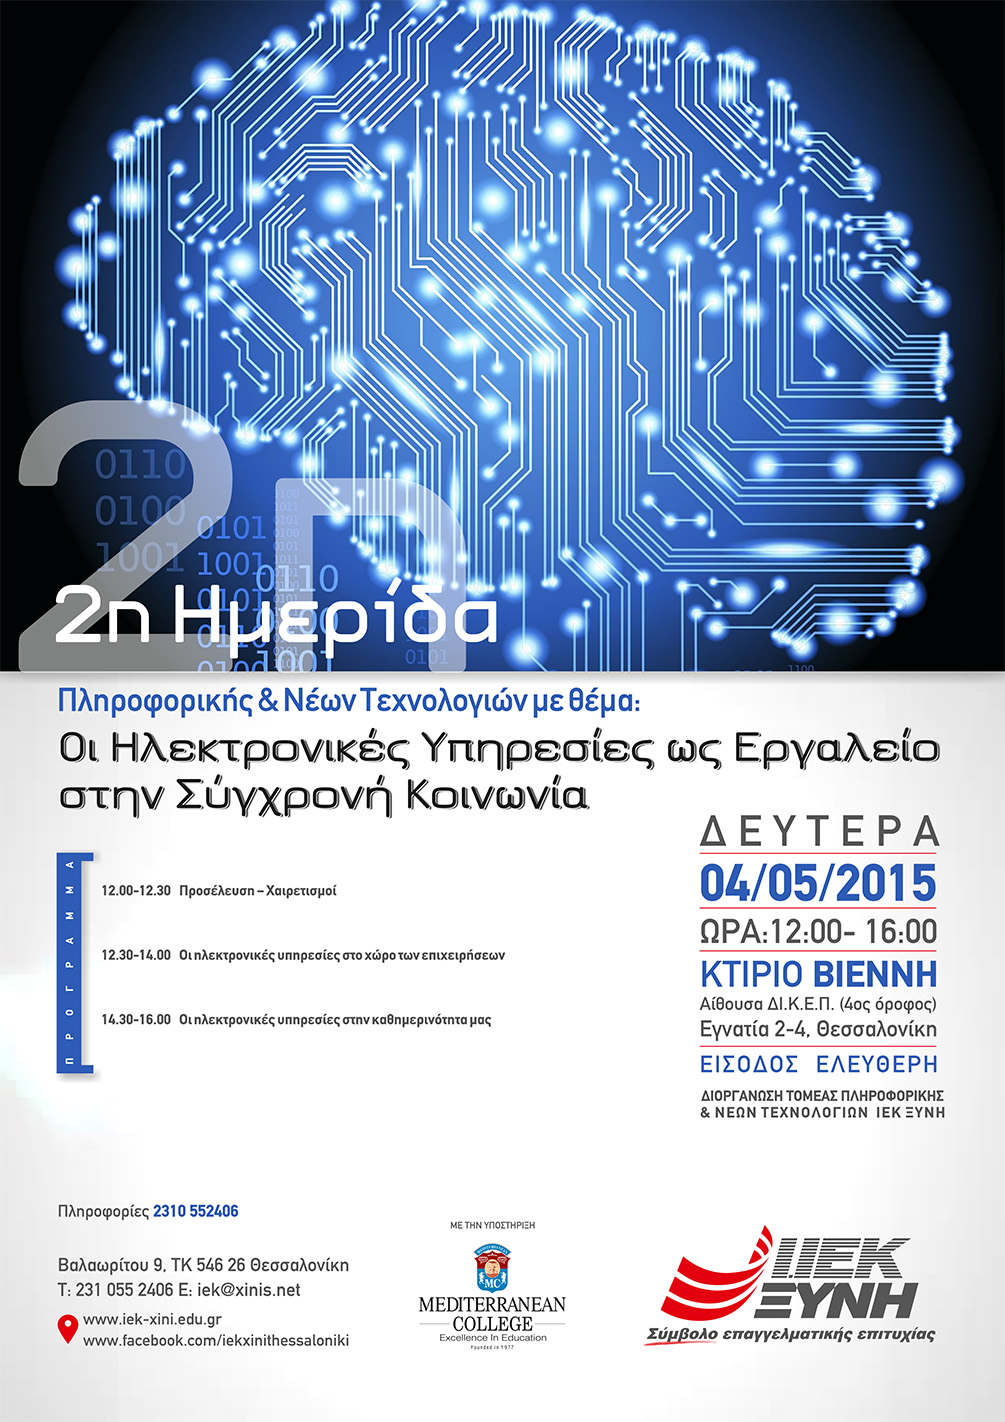 Οι Ηλεκτρονικές Υπηρεσίες ως Εργαλείο στην Σύγχρονή Κοινωνία – 2η Ημερίδα Πληροφορικής & Νέων Τεχνολογιών του ΙΕΚ ΞΥΝΗ Μακεδονίας